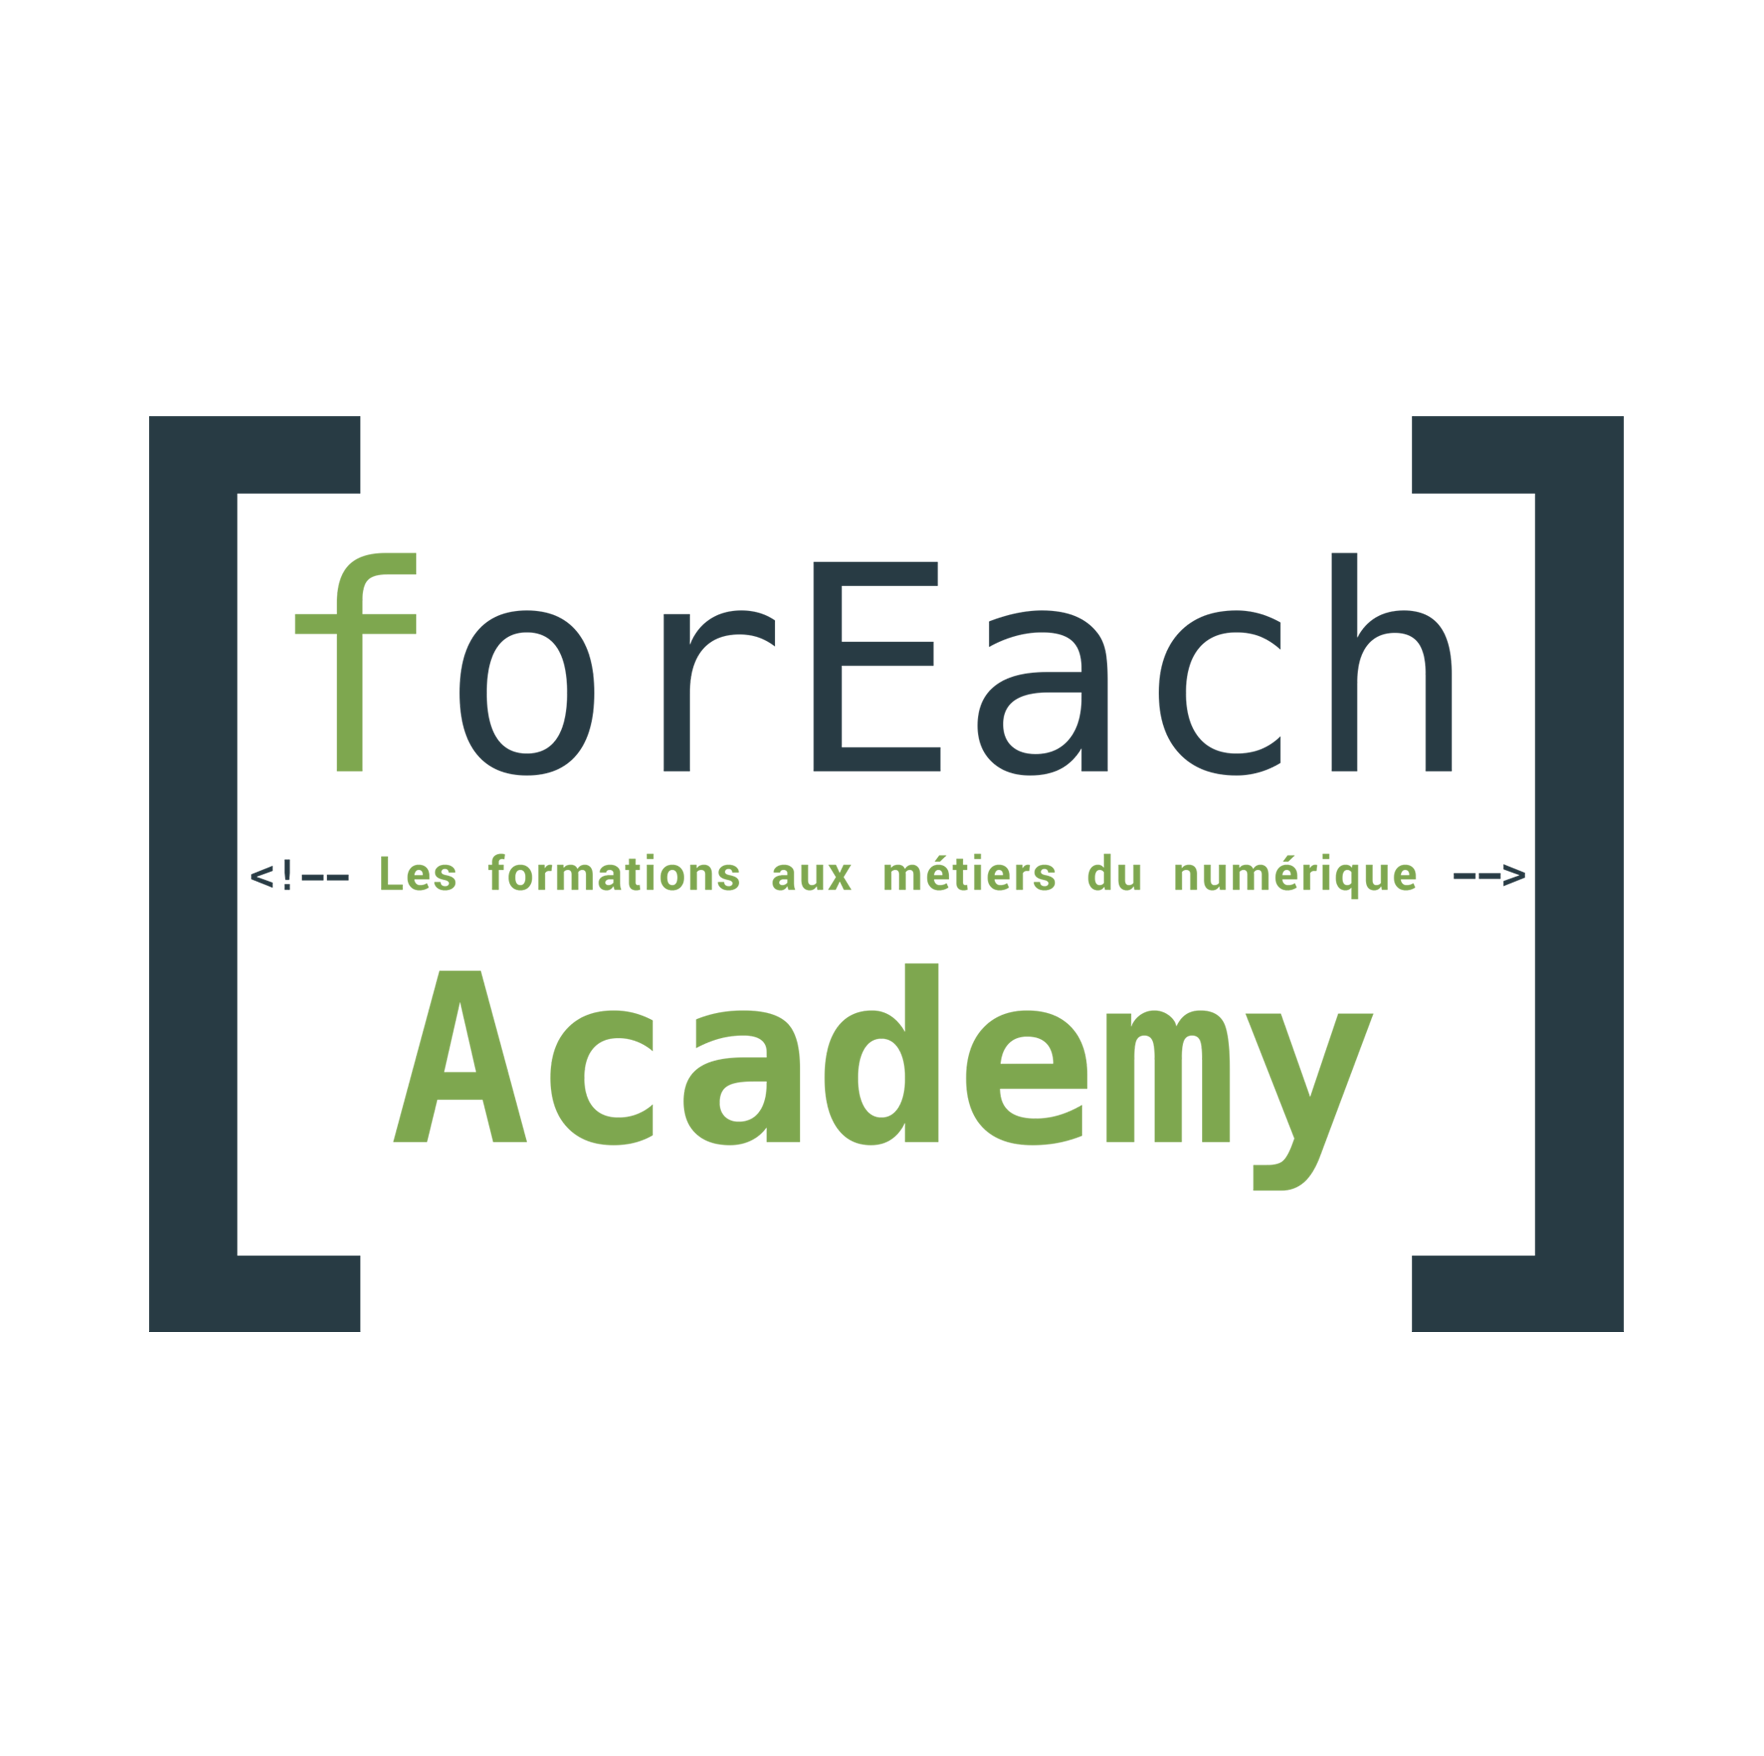 Ecole ForEach Academy